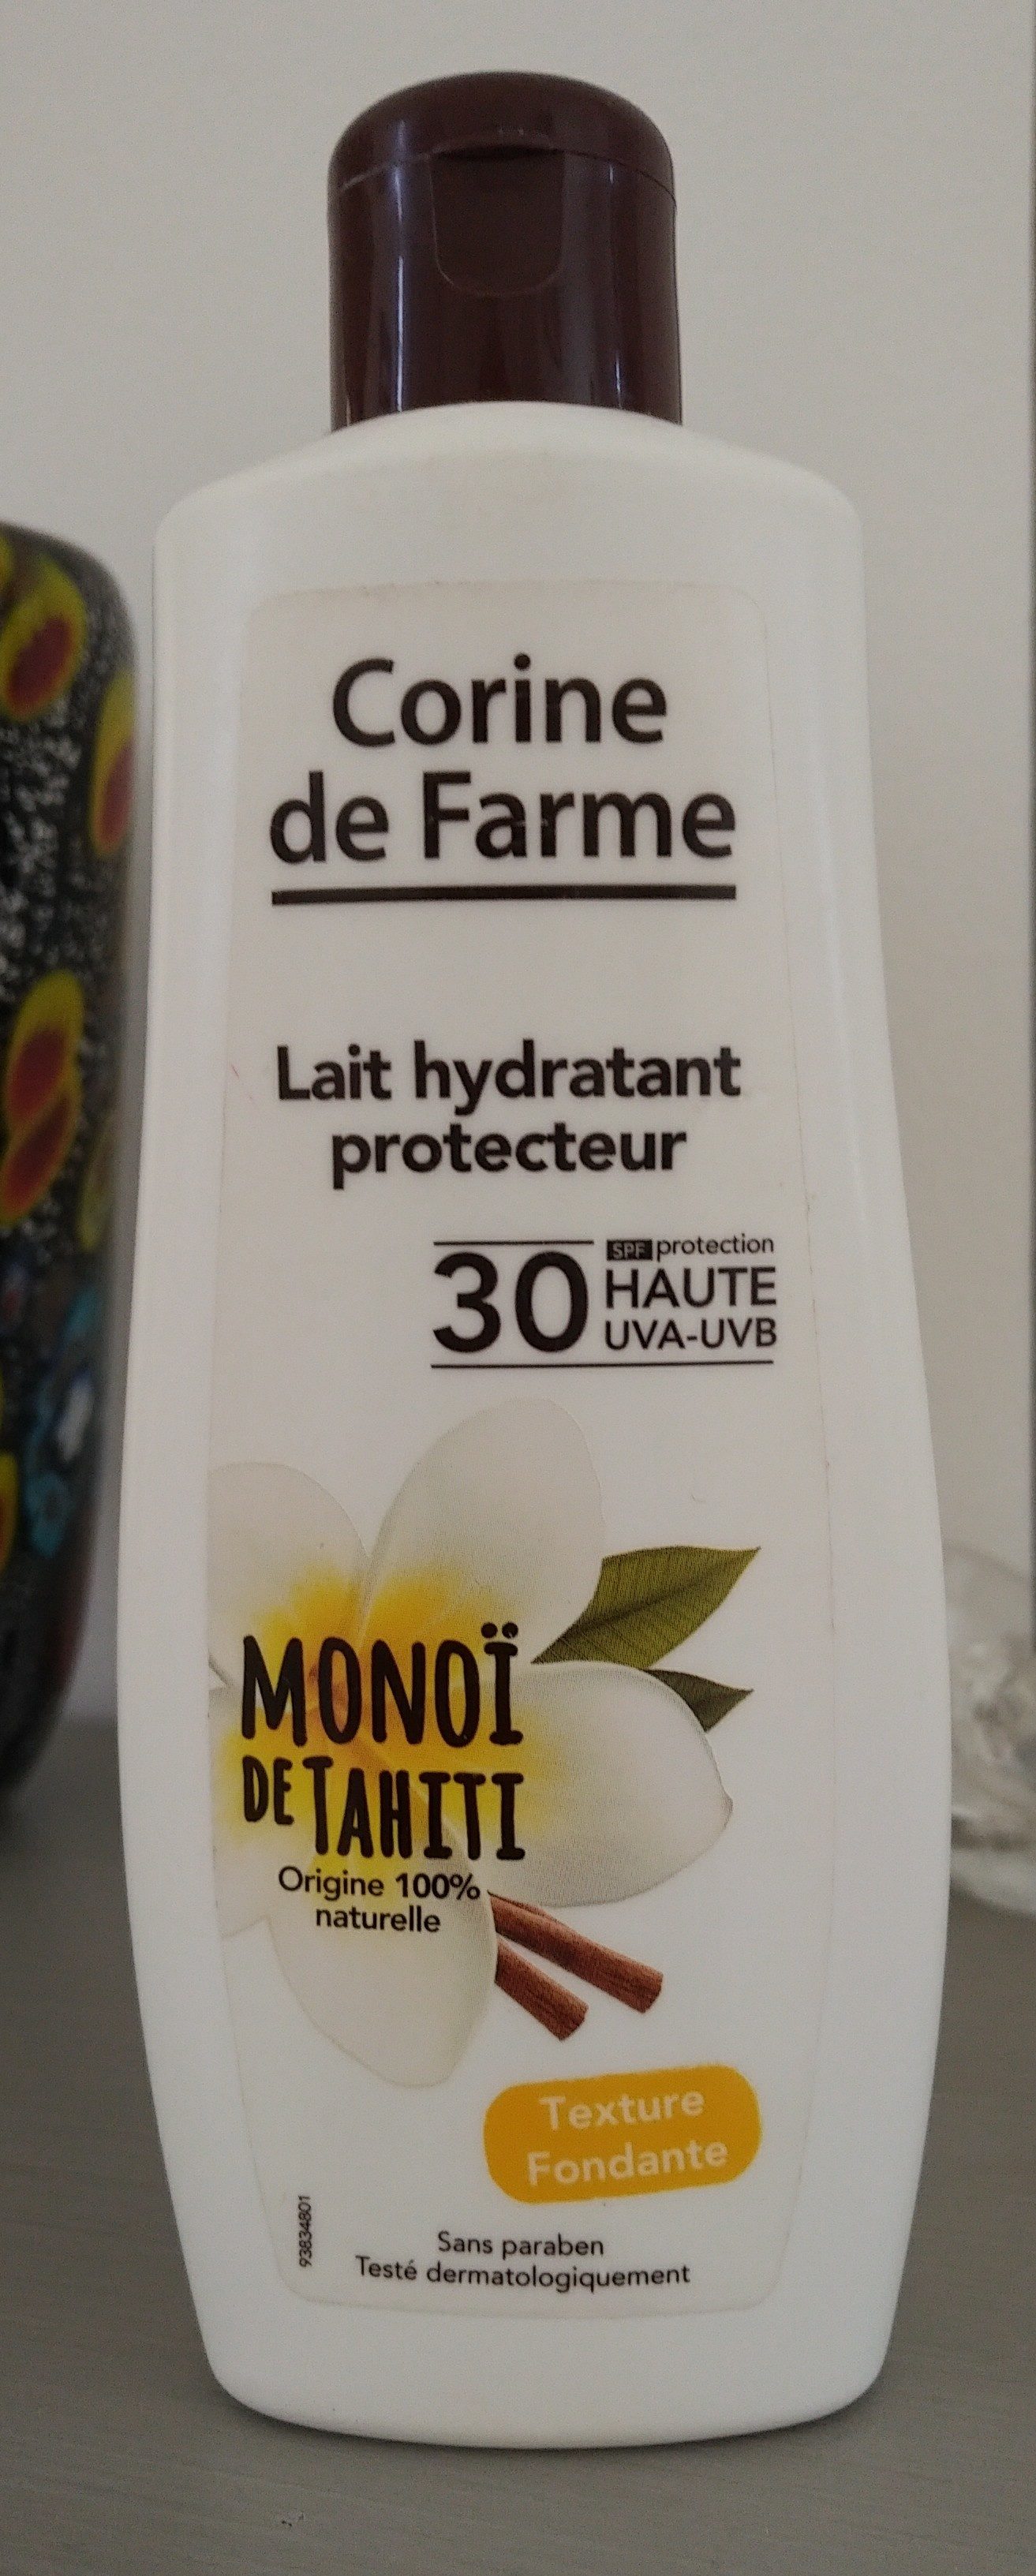 Lait hydratant protecteur monoï de tahiti - Продукт - fr